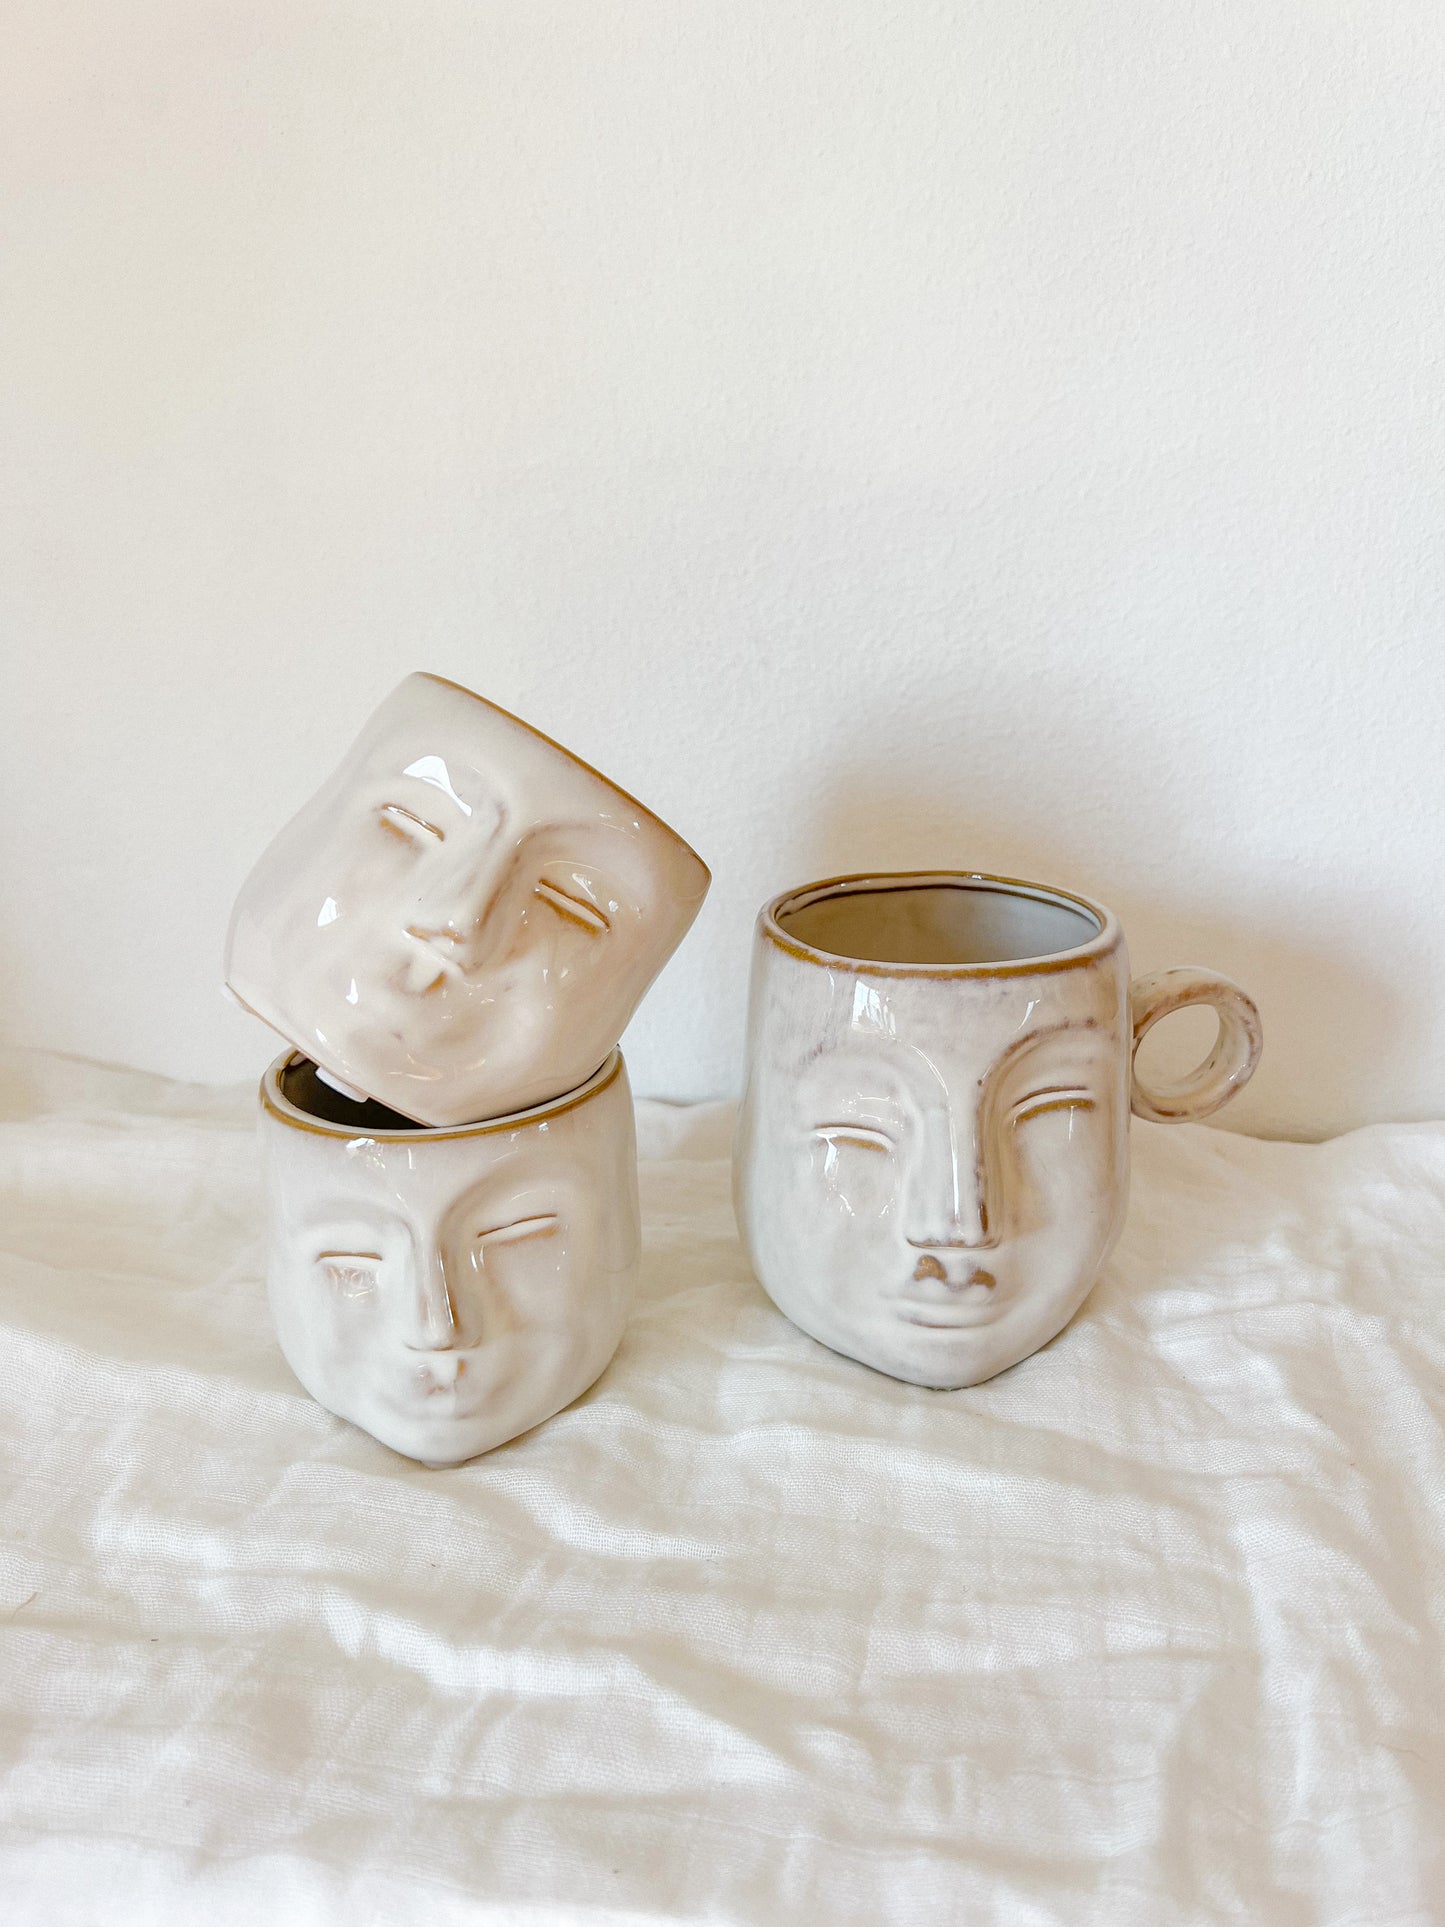 Ceramic Face Mug